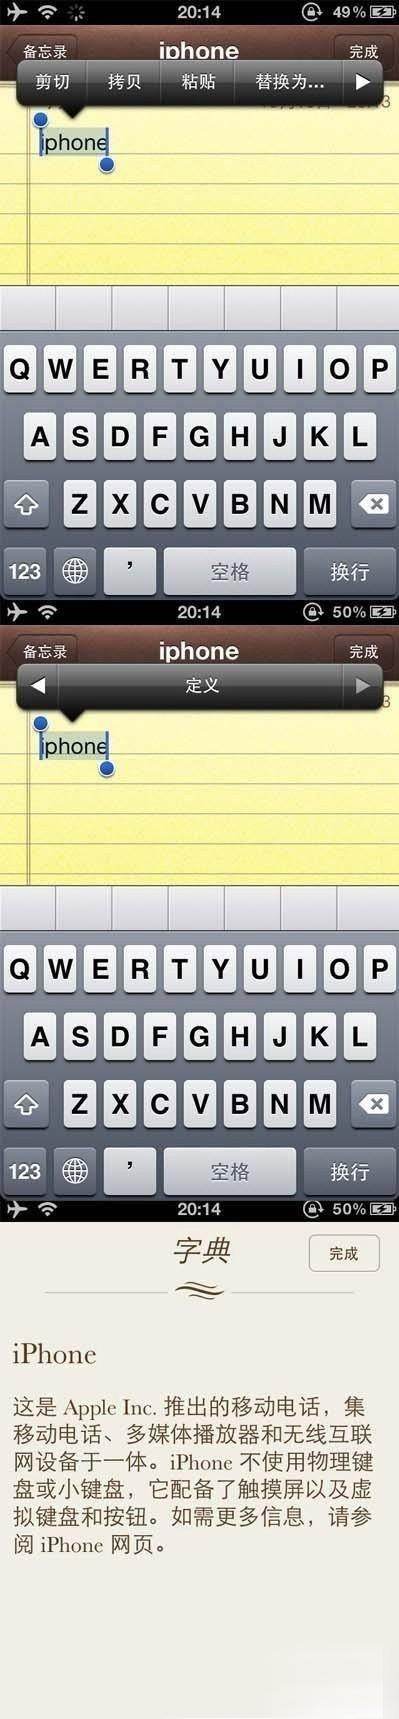 iphone4s字典功能使用教程 图老师